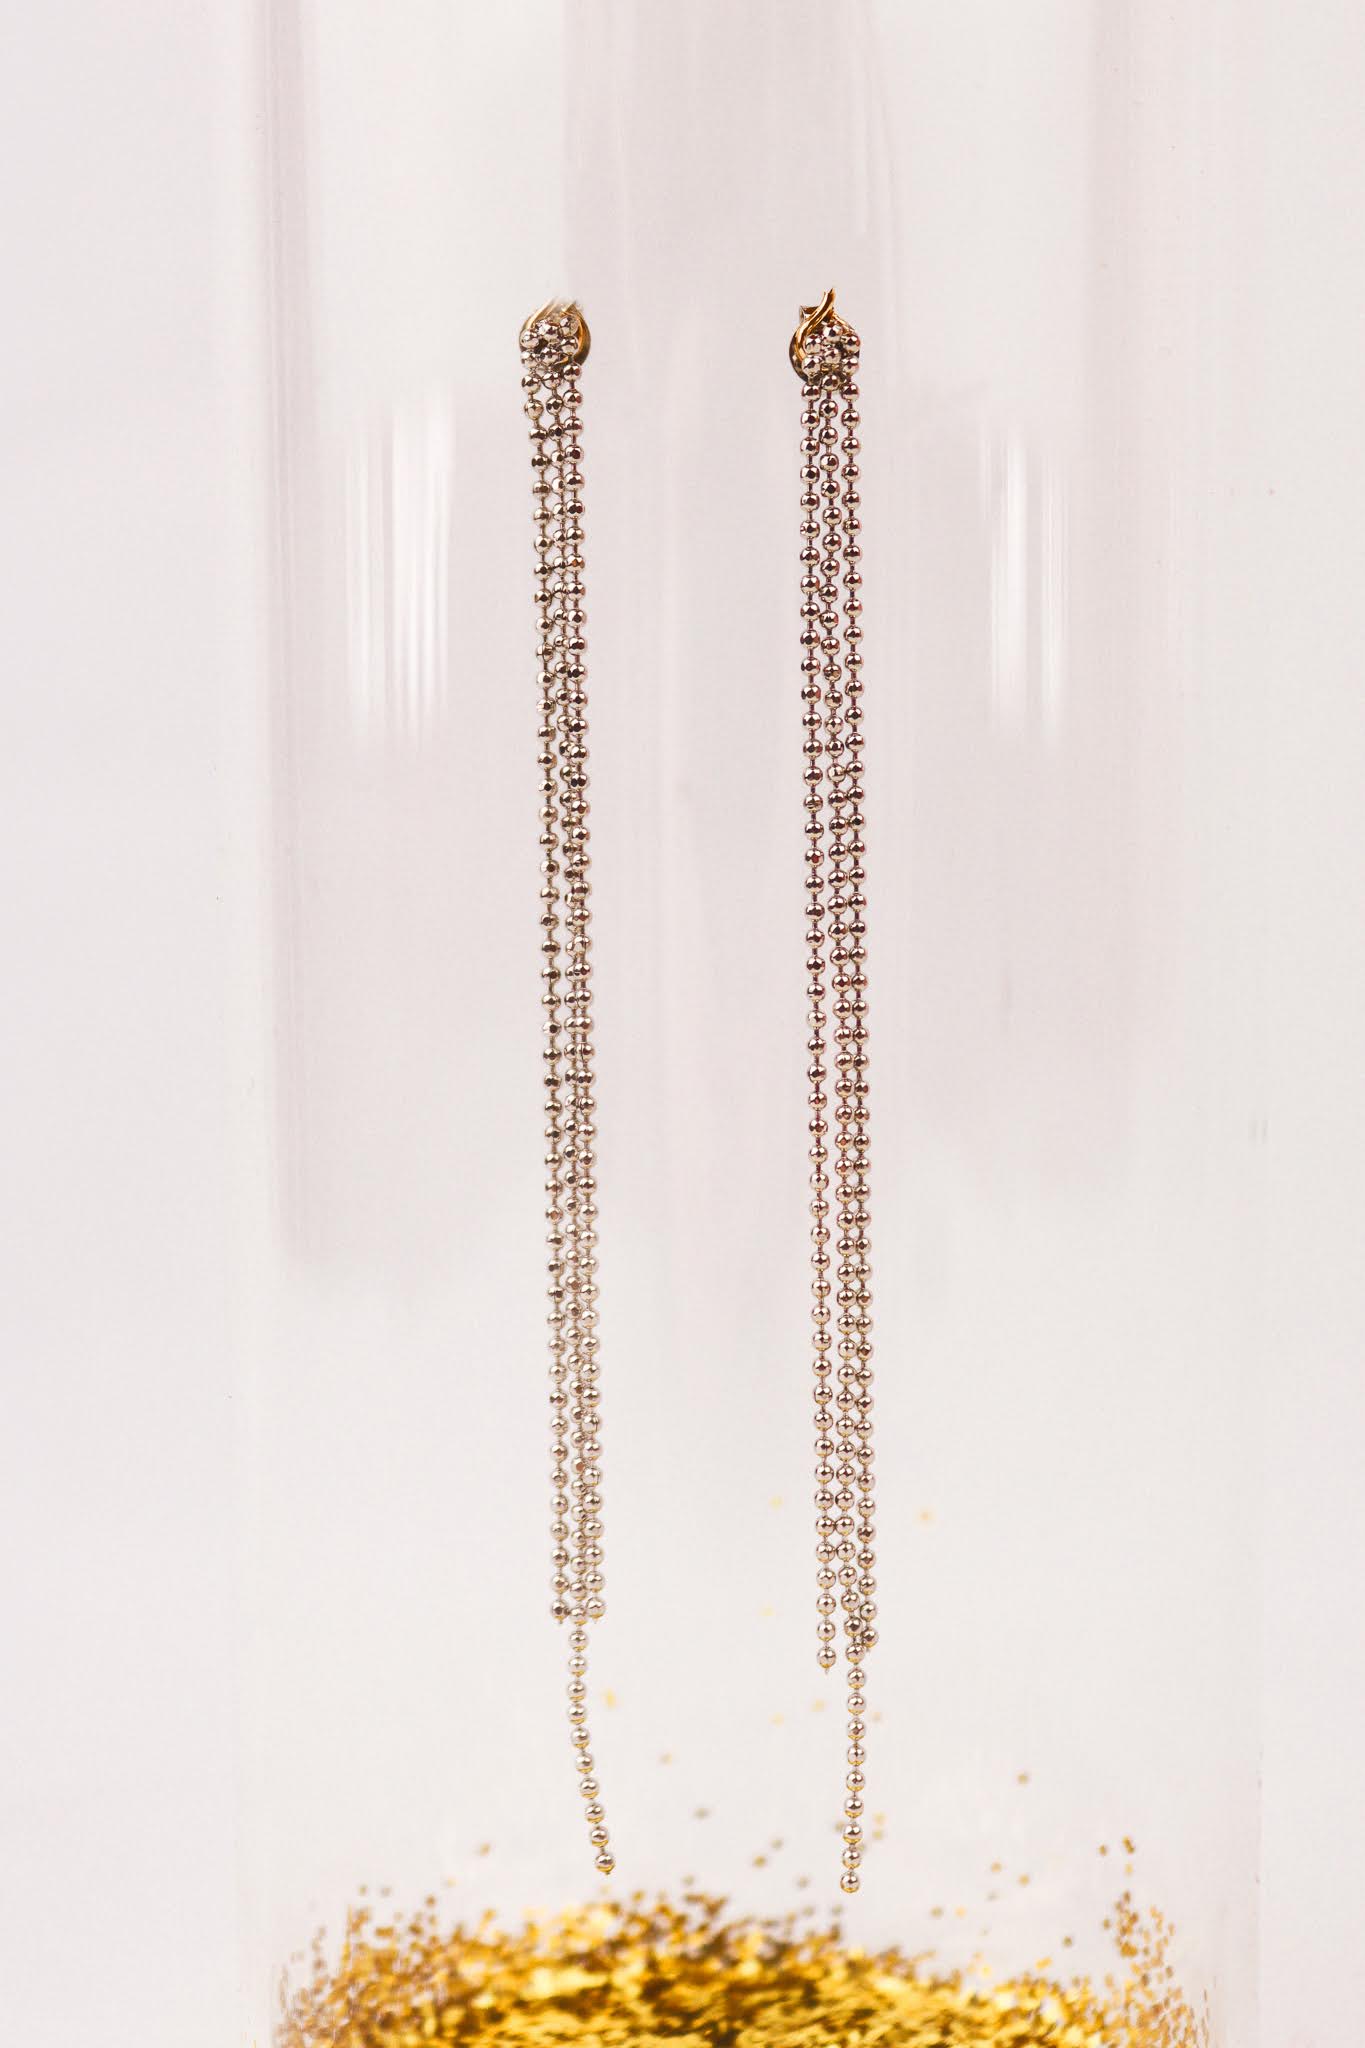 Bullit Chain silver earrings long